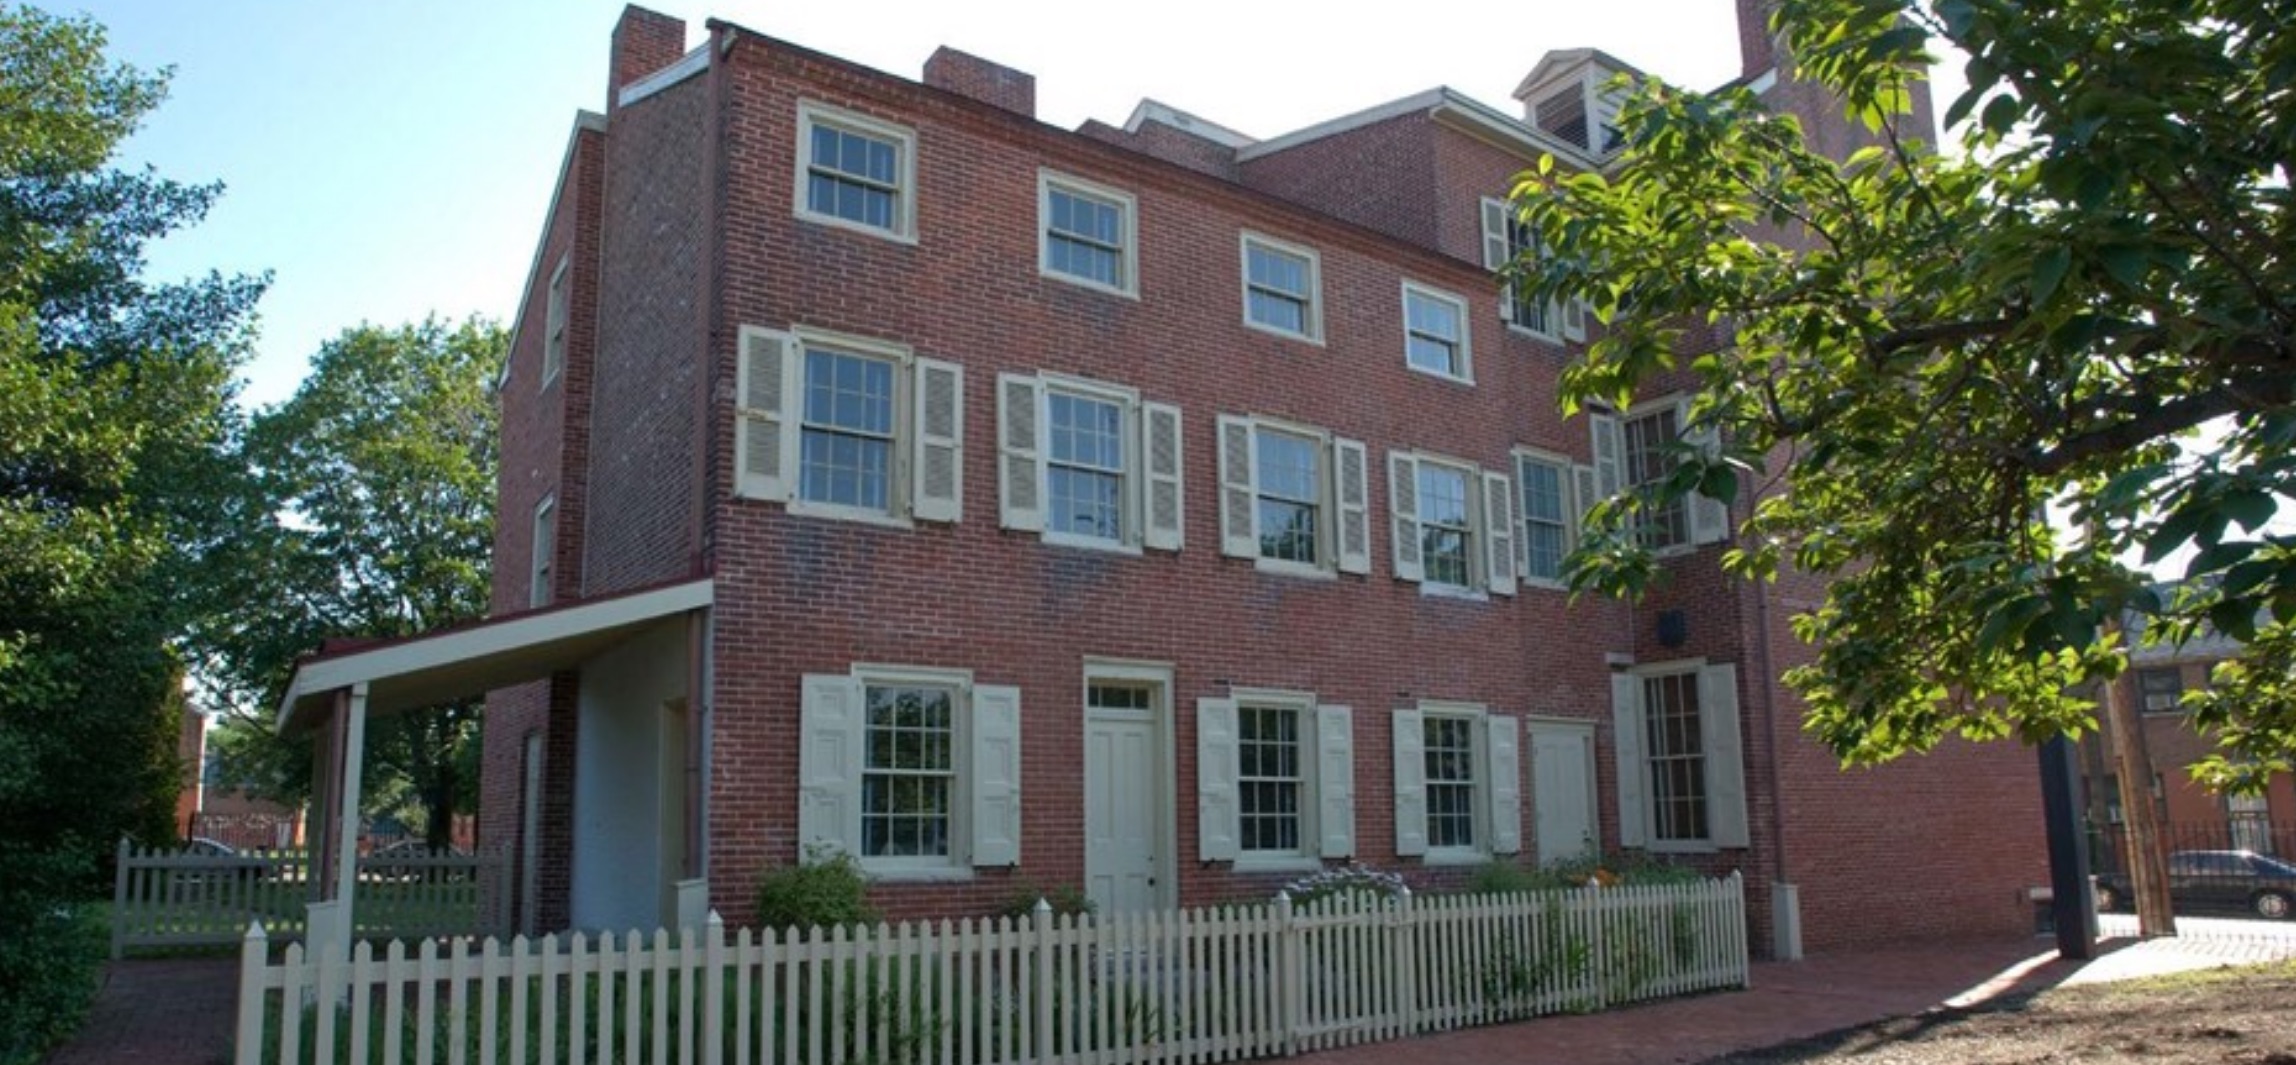 Edgar Allan Poe National Historic Site: Historic Buildings Contractor (Prior Notice)